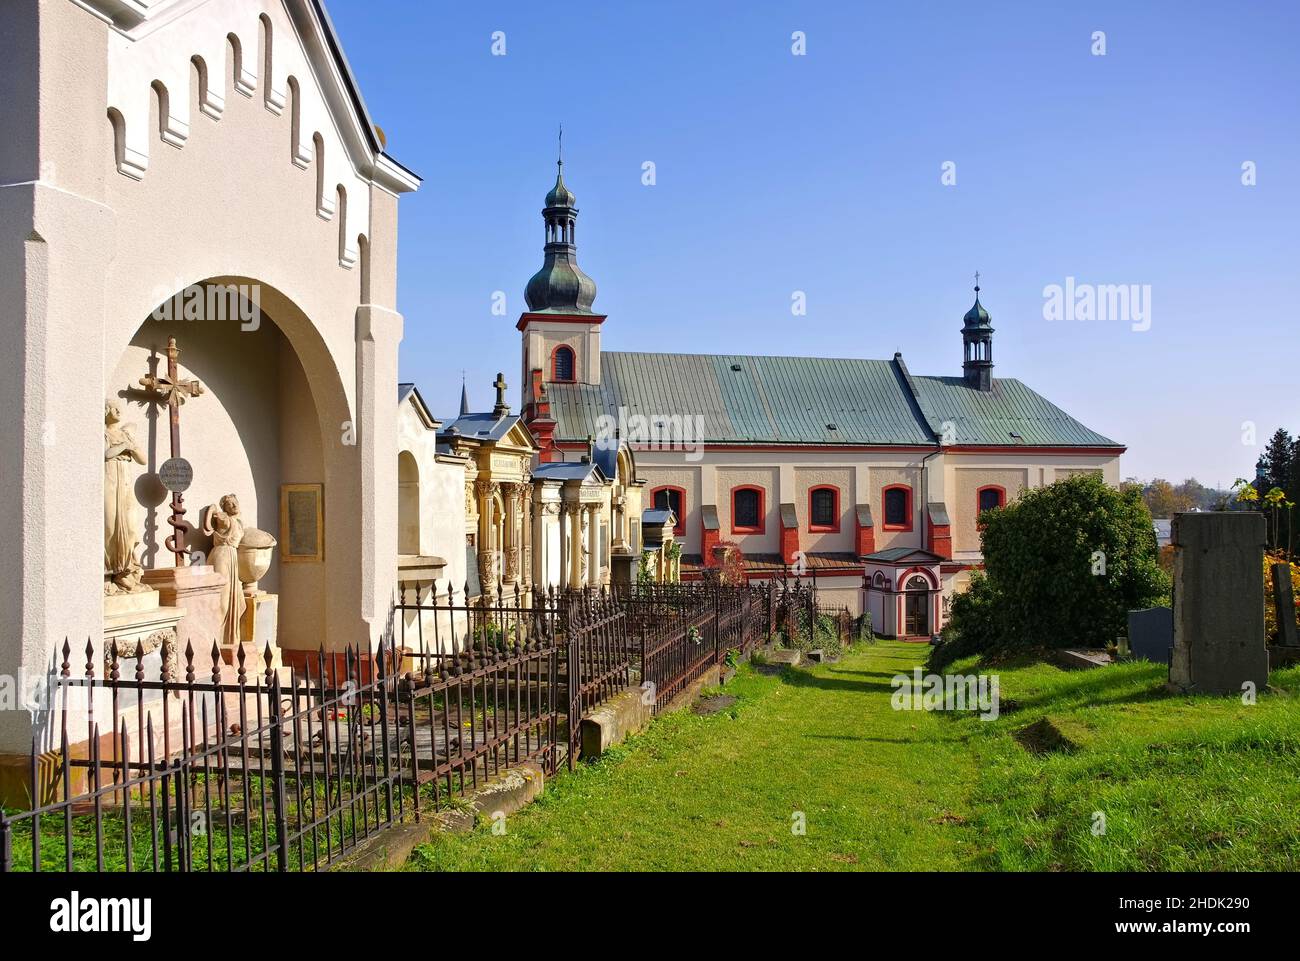 augustinian monastery, vrchlabi, augustinian monasteries Stock Photo